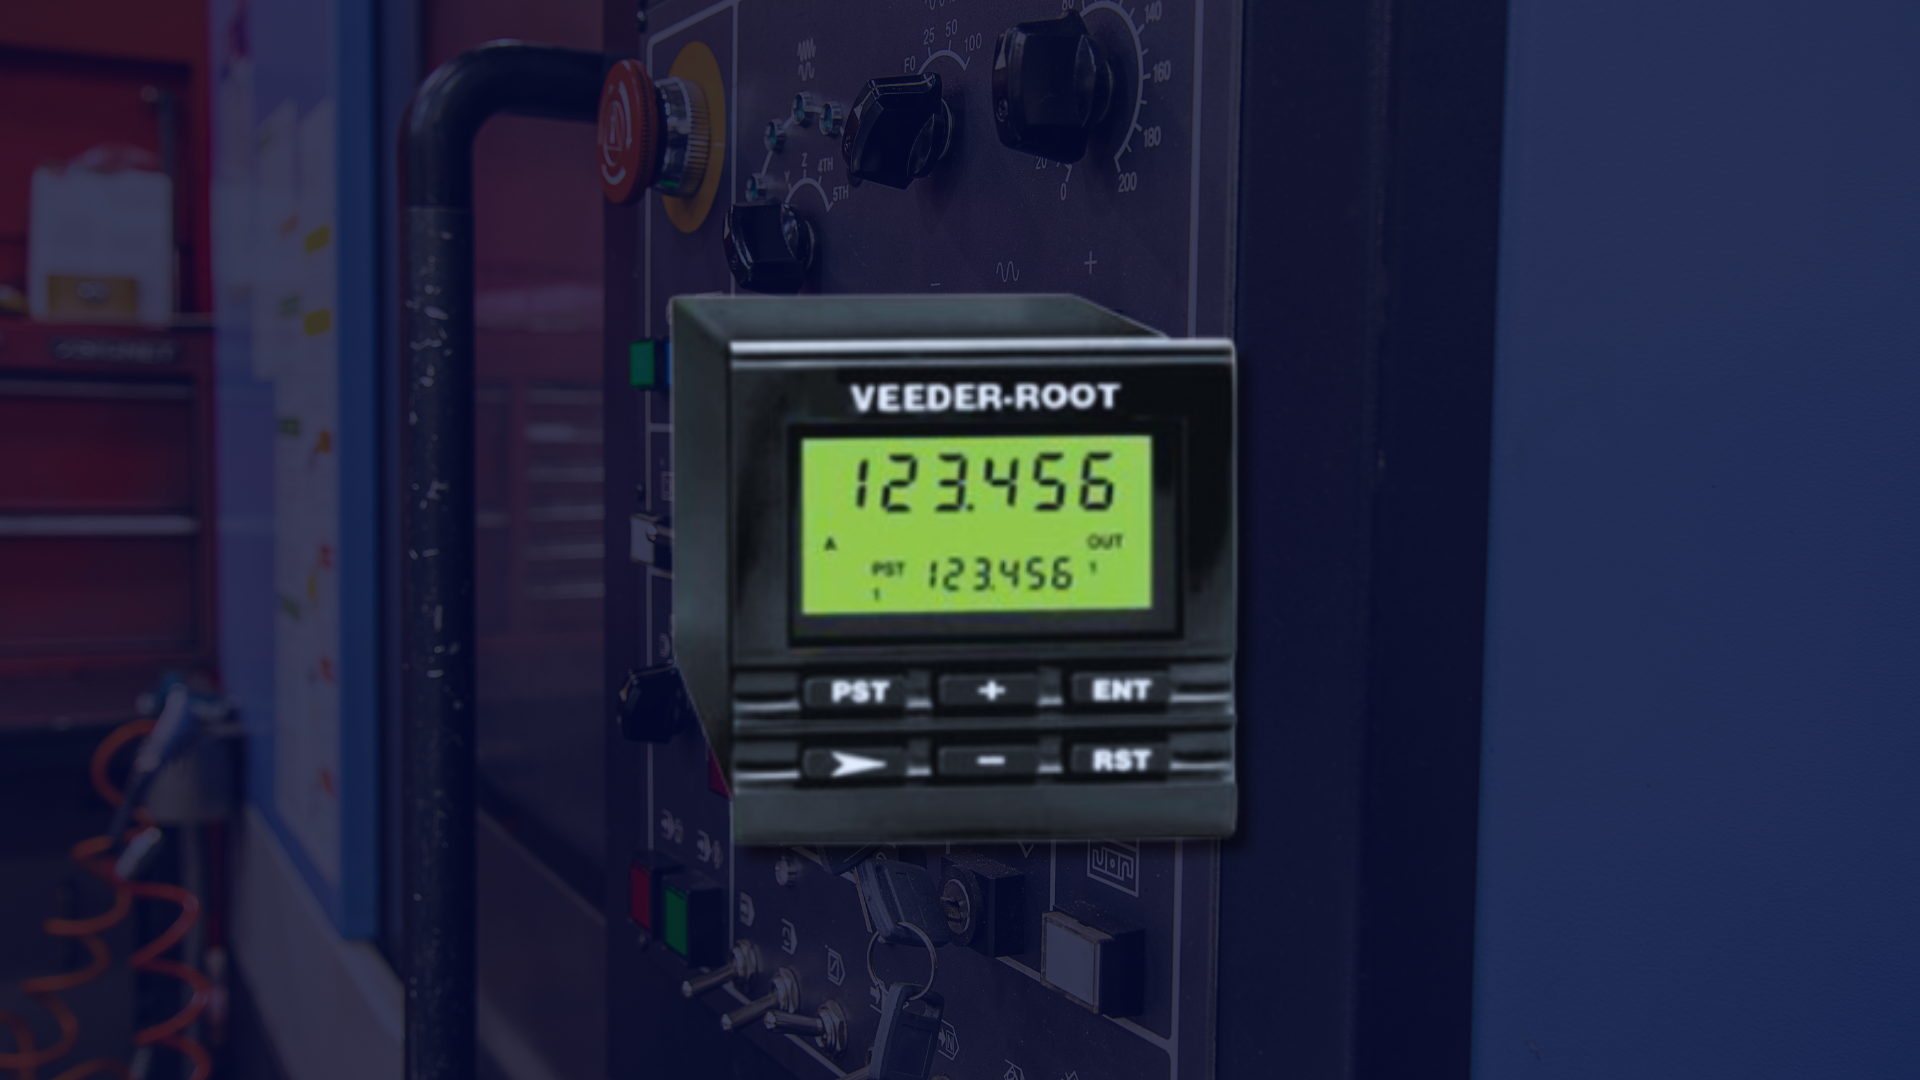 Contador SQC Veeder-Root: Reposição Garantida!